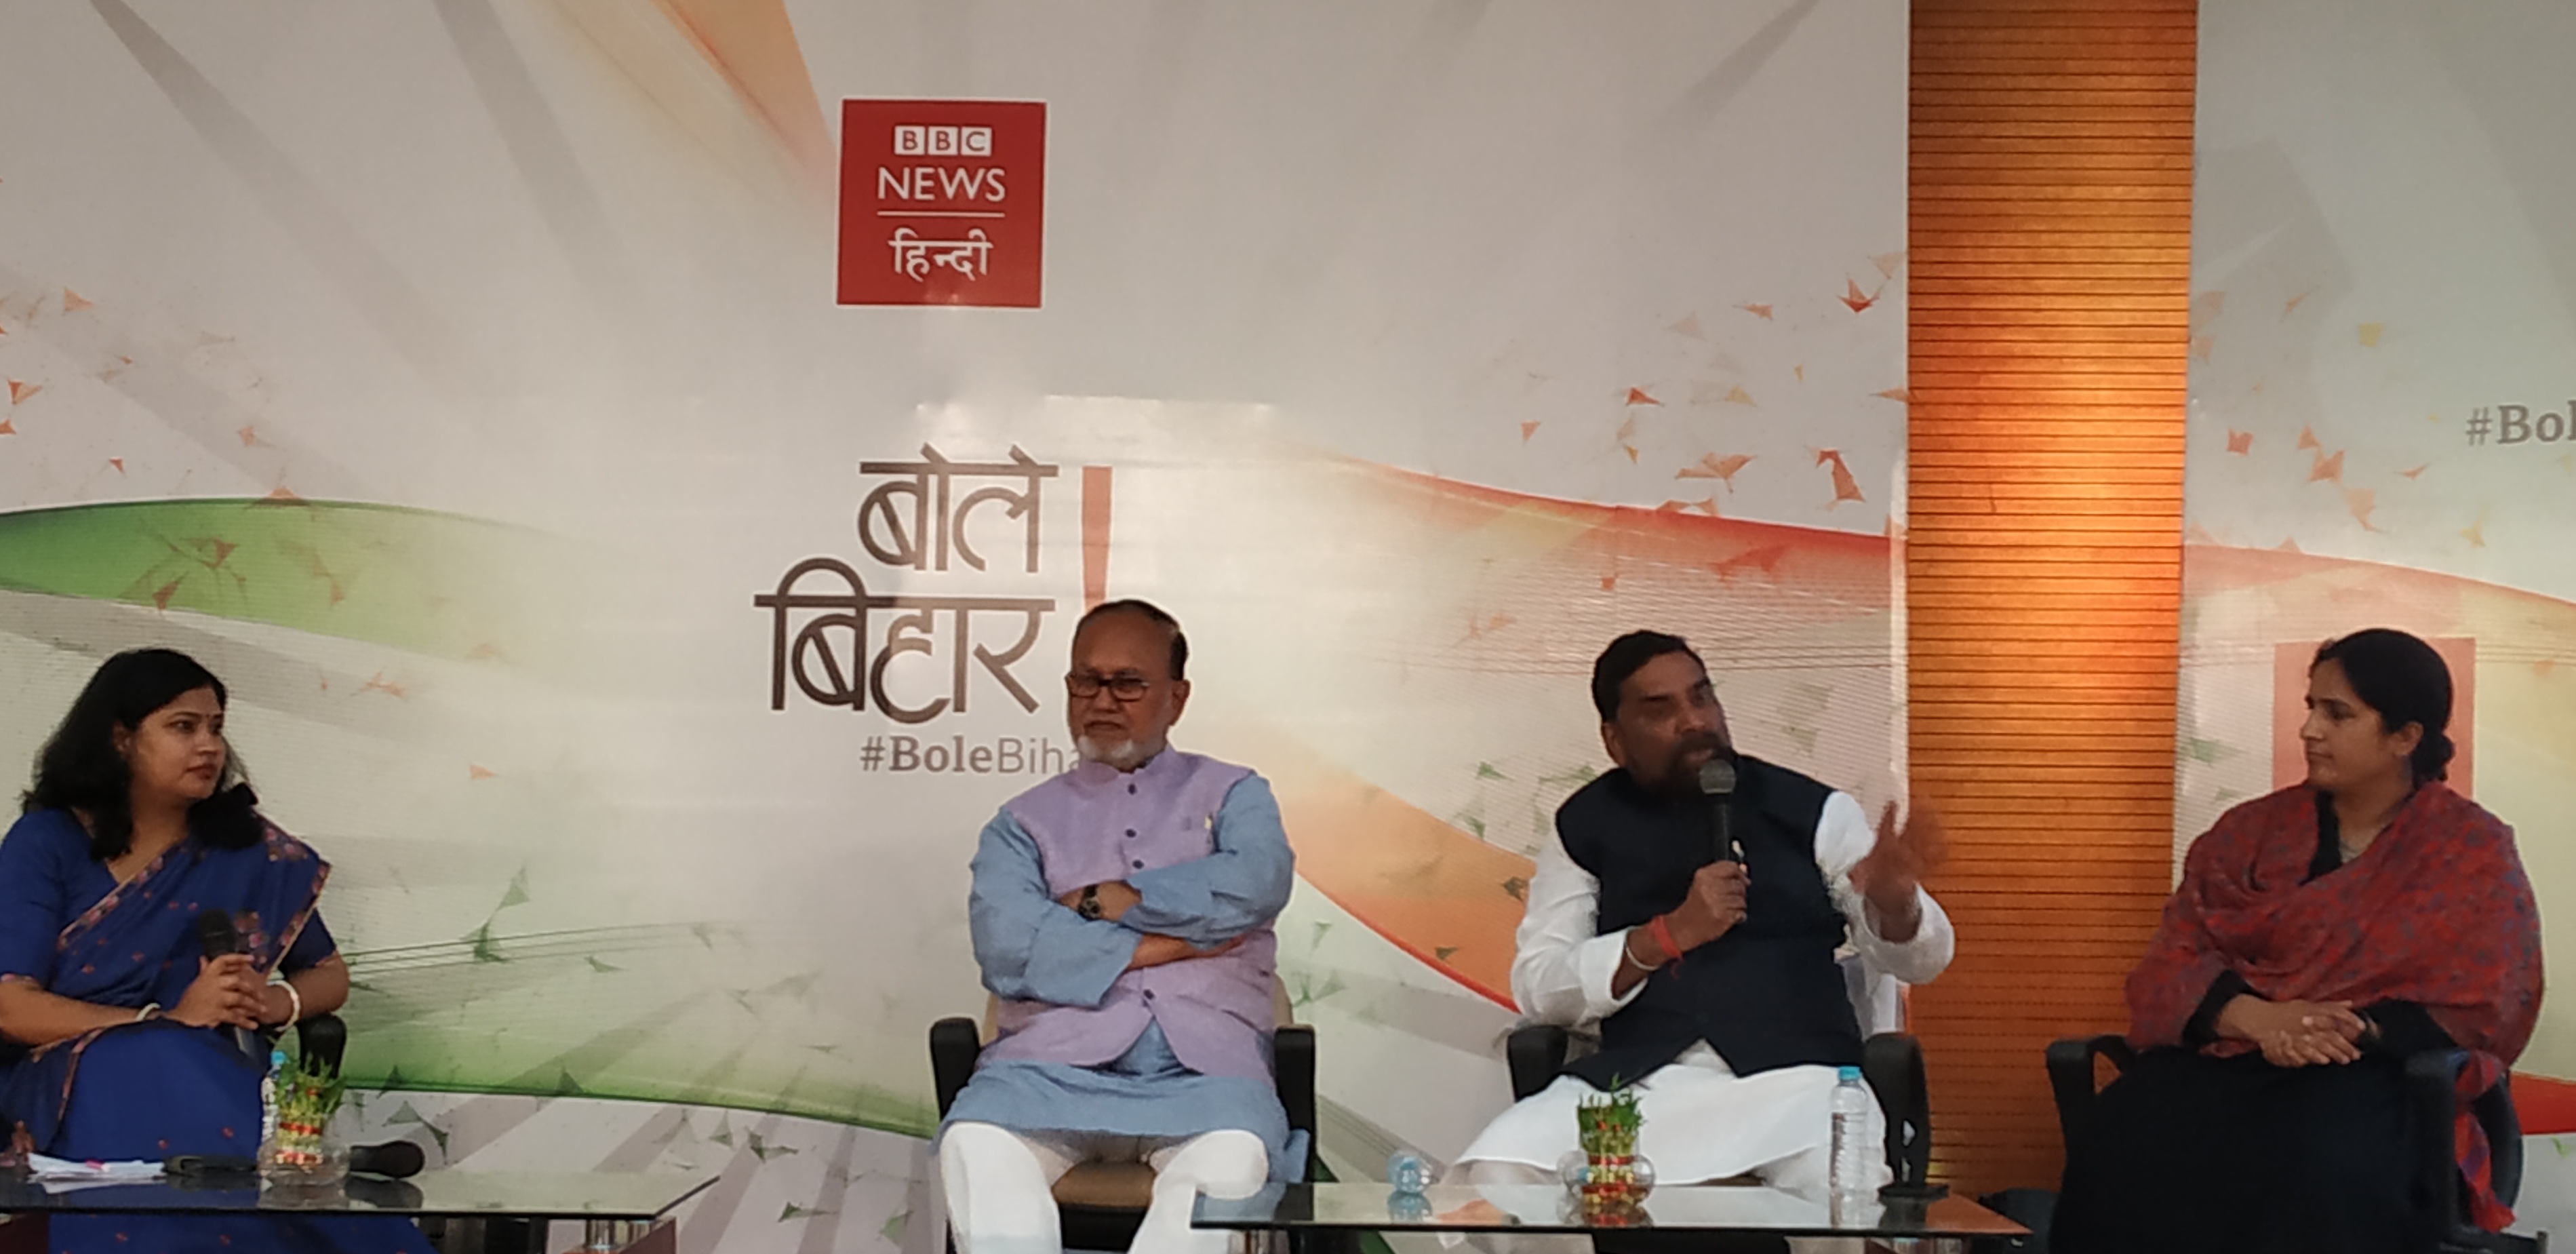 BBC bole Bihar